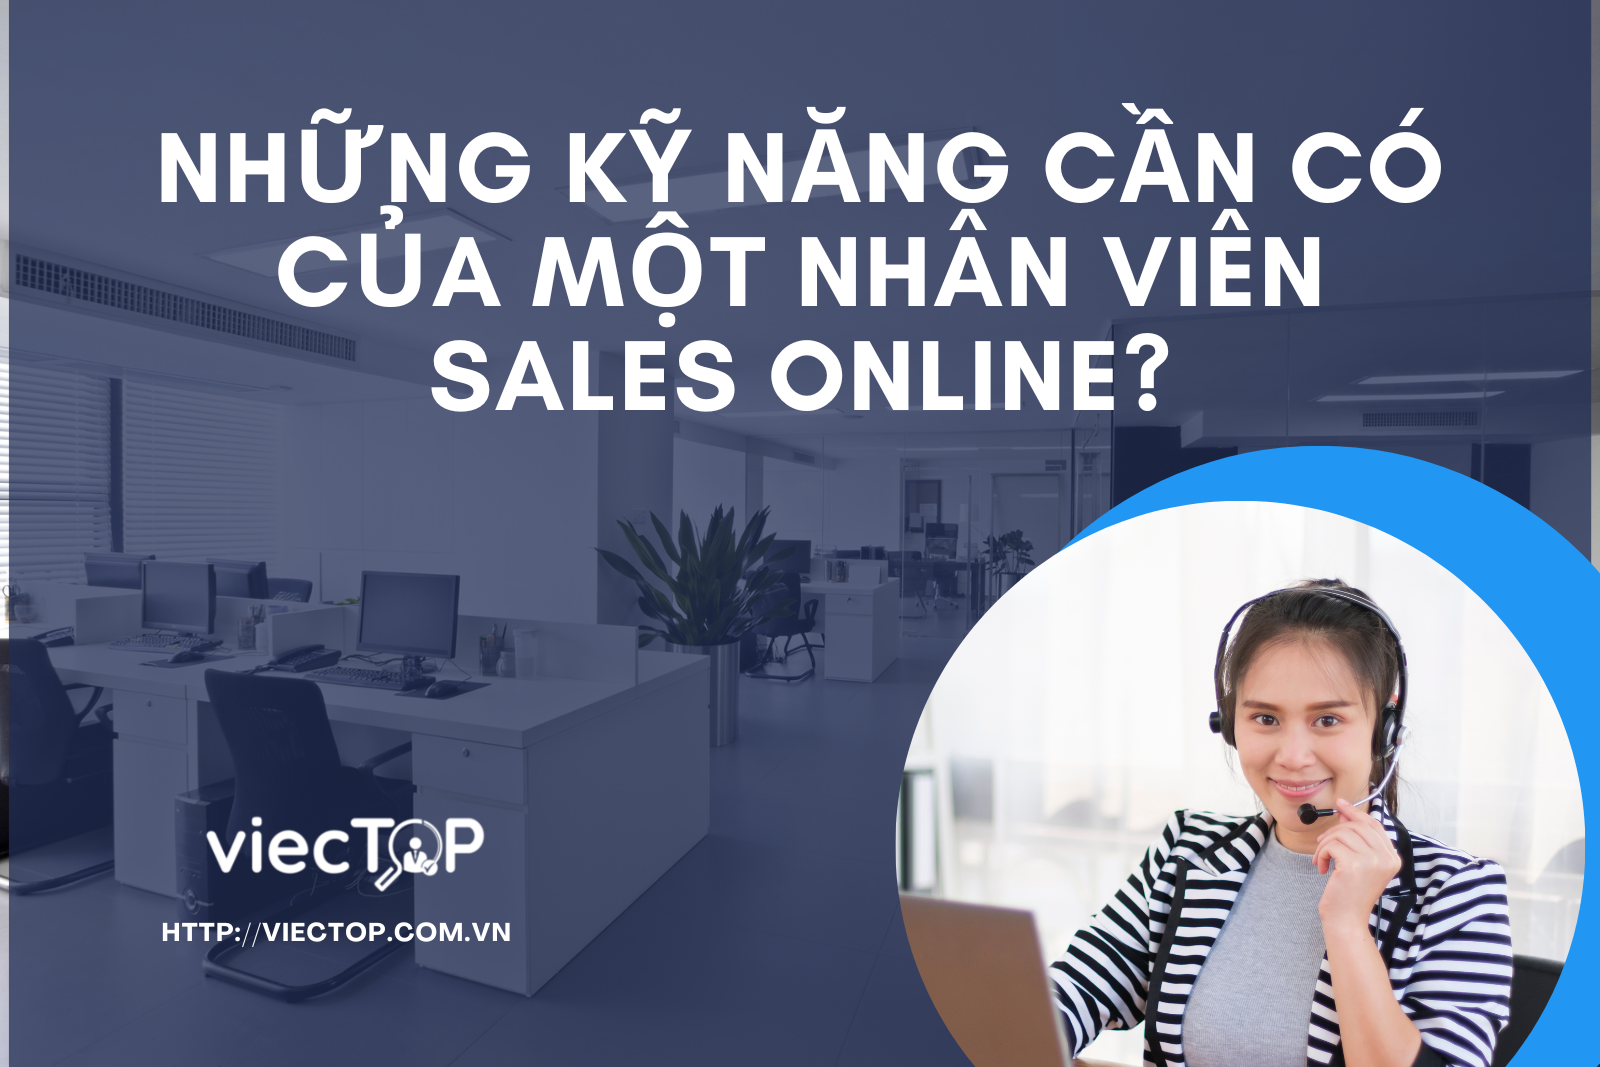 Sales Online là gì? Kỹ năng cần có của một nhân viên sales online?